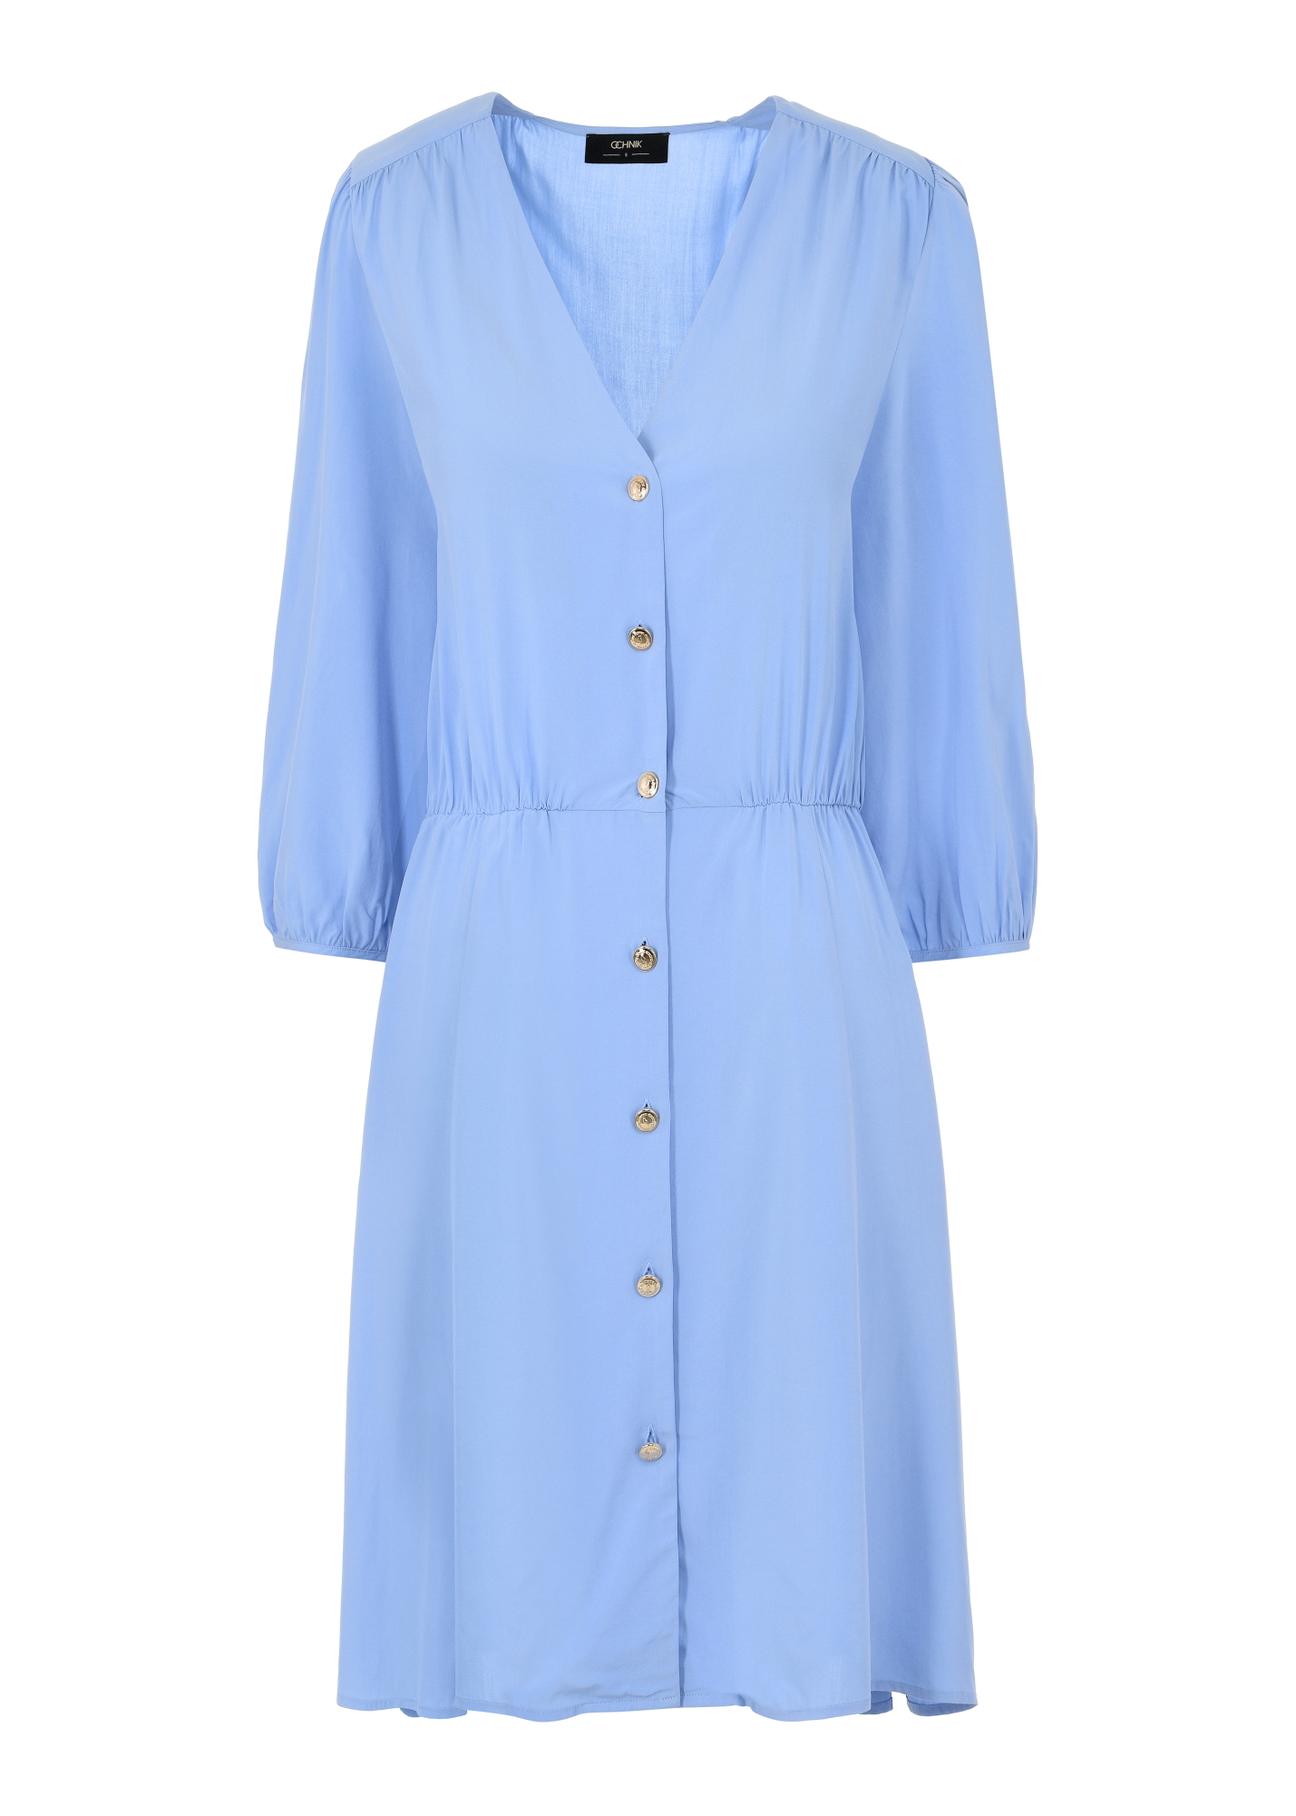 Błękitna przewiewna sukienka SUKDT-0186-61(W24)